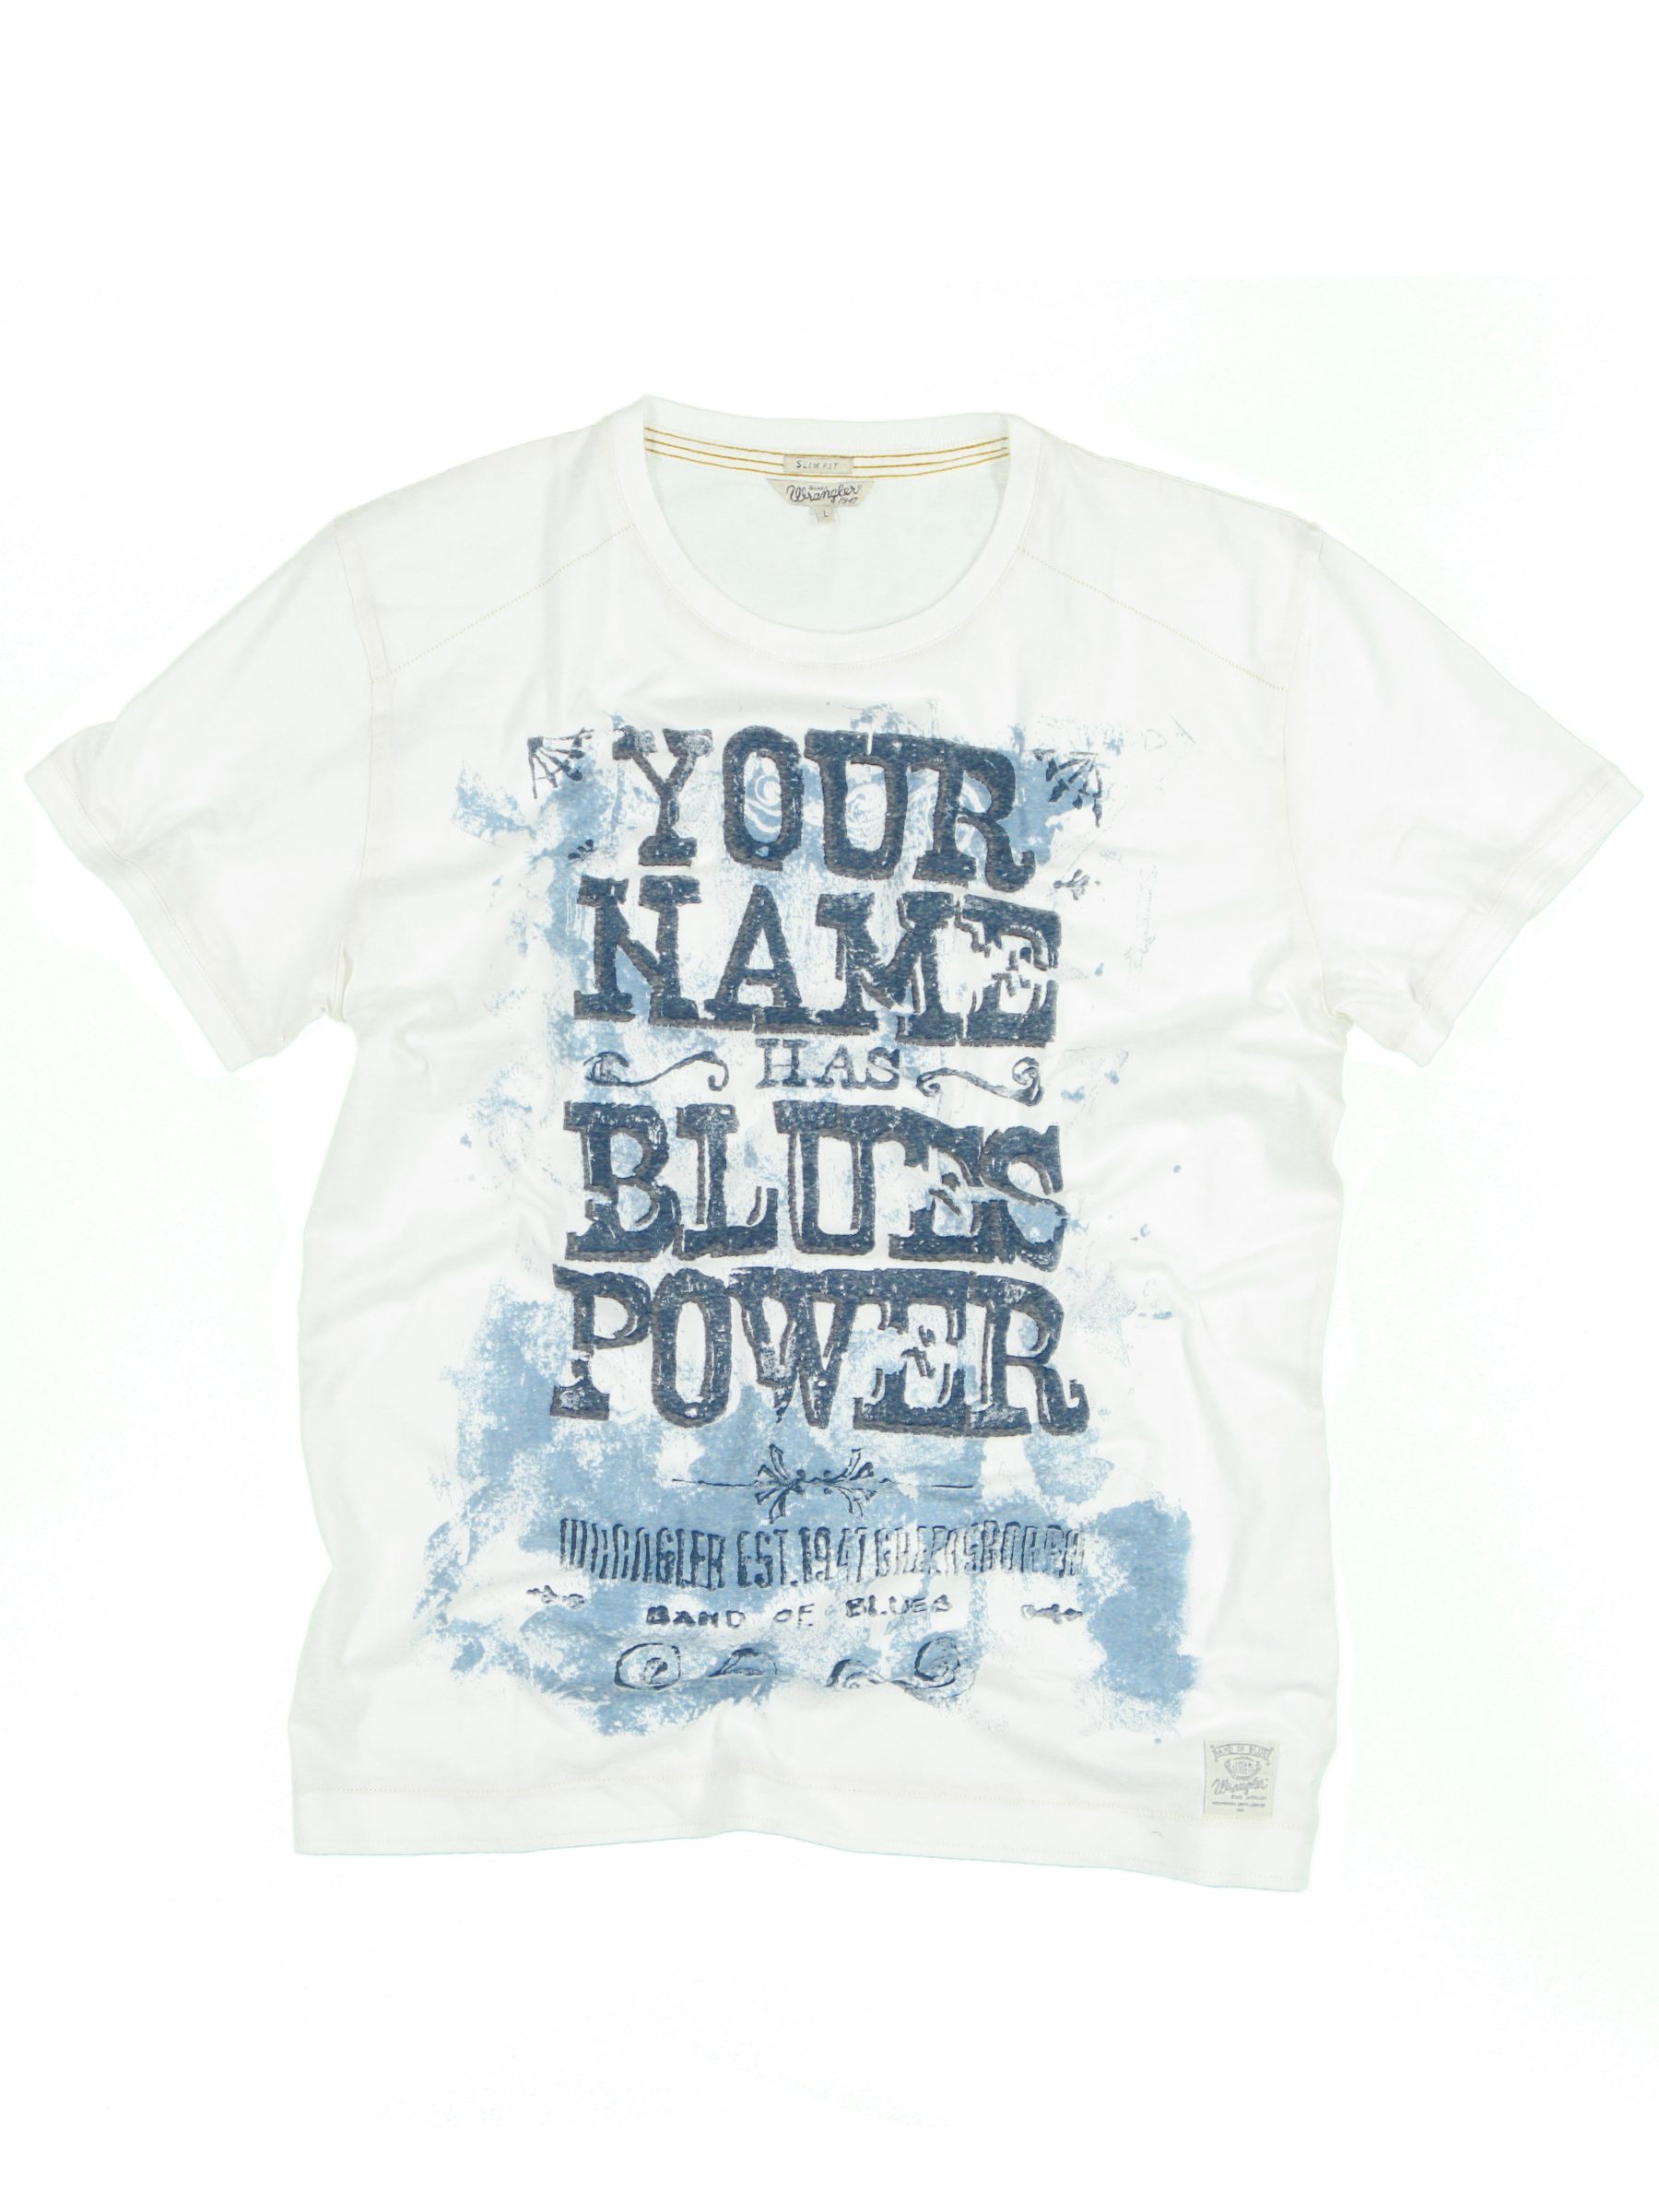 Blue Power Short Sleeve T-Shirt,